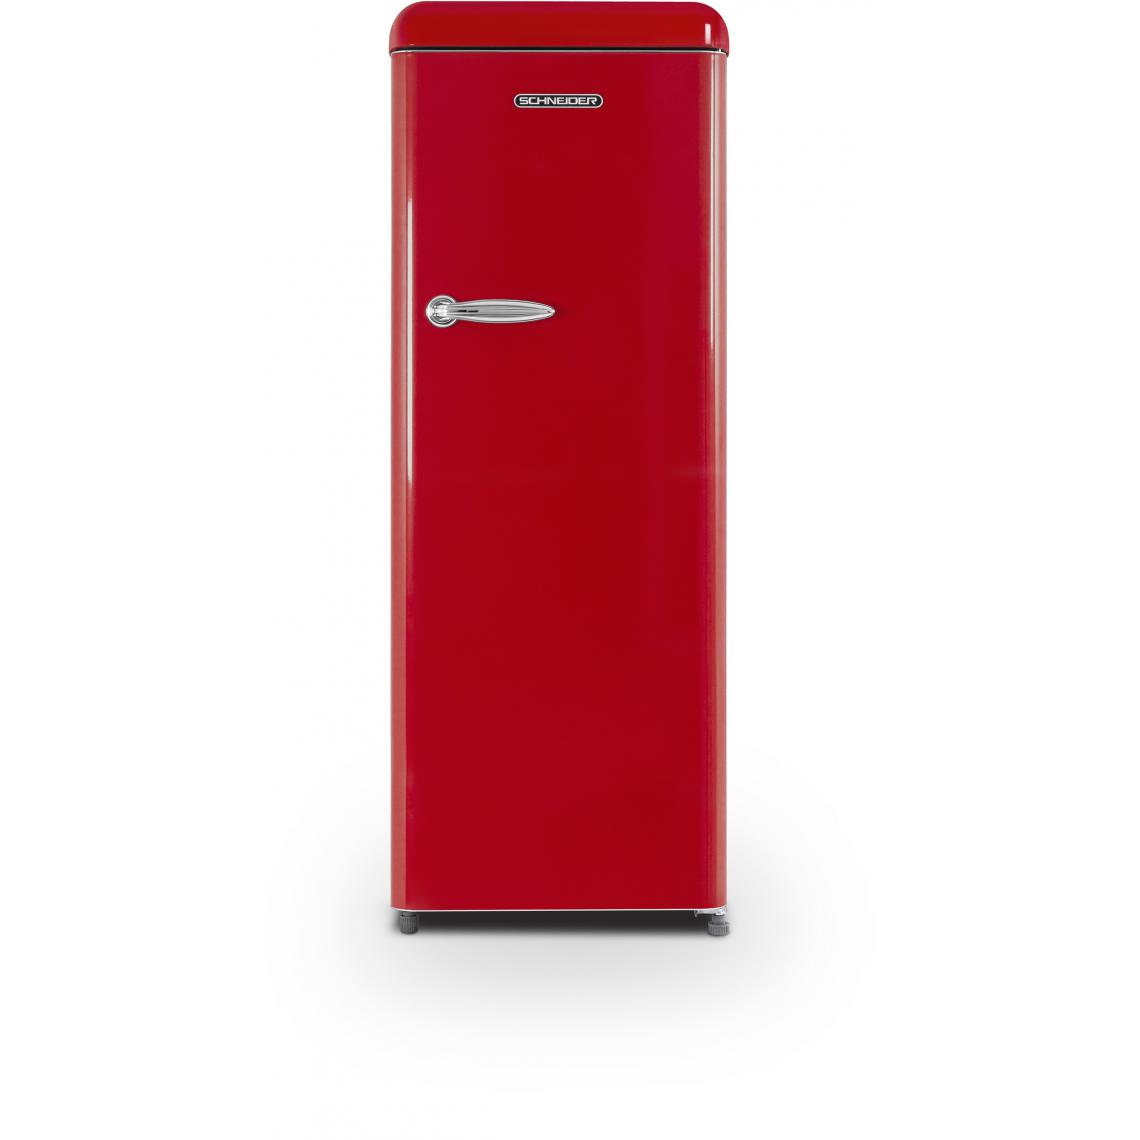 Schneider - Réfrigérateur 1 porte SCCL222VR - Réfrigérateur